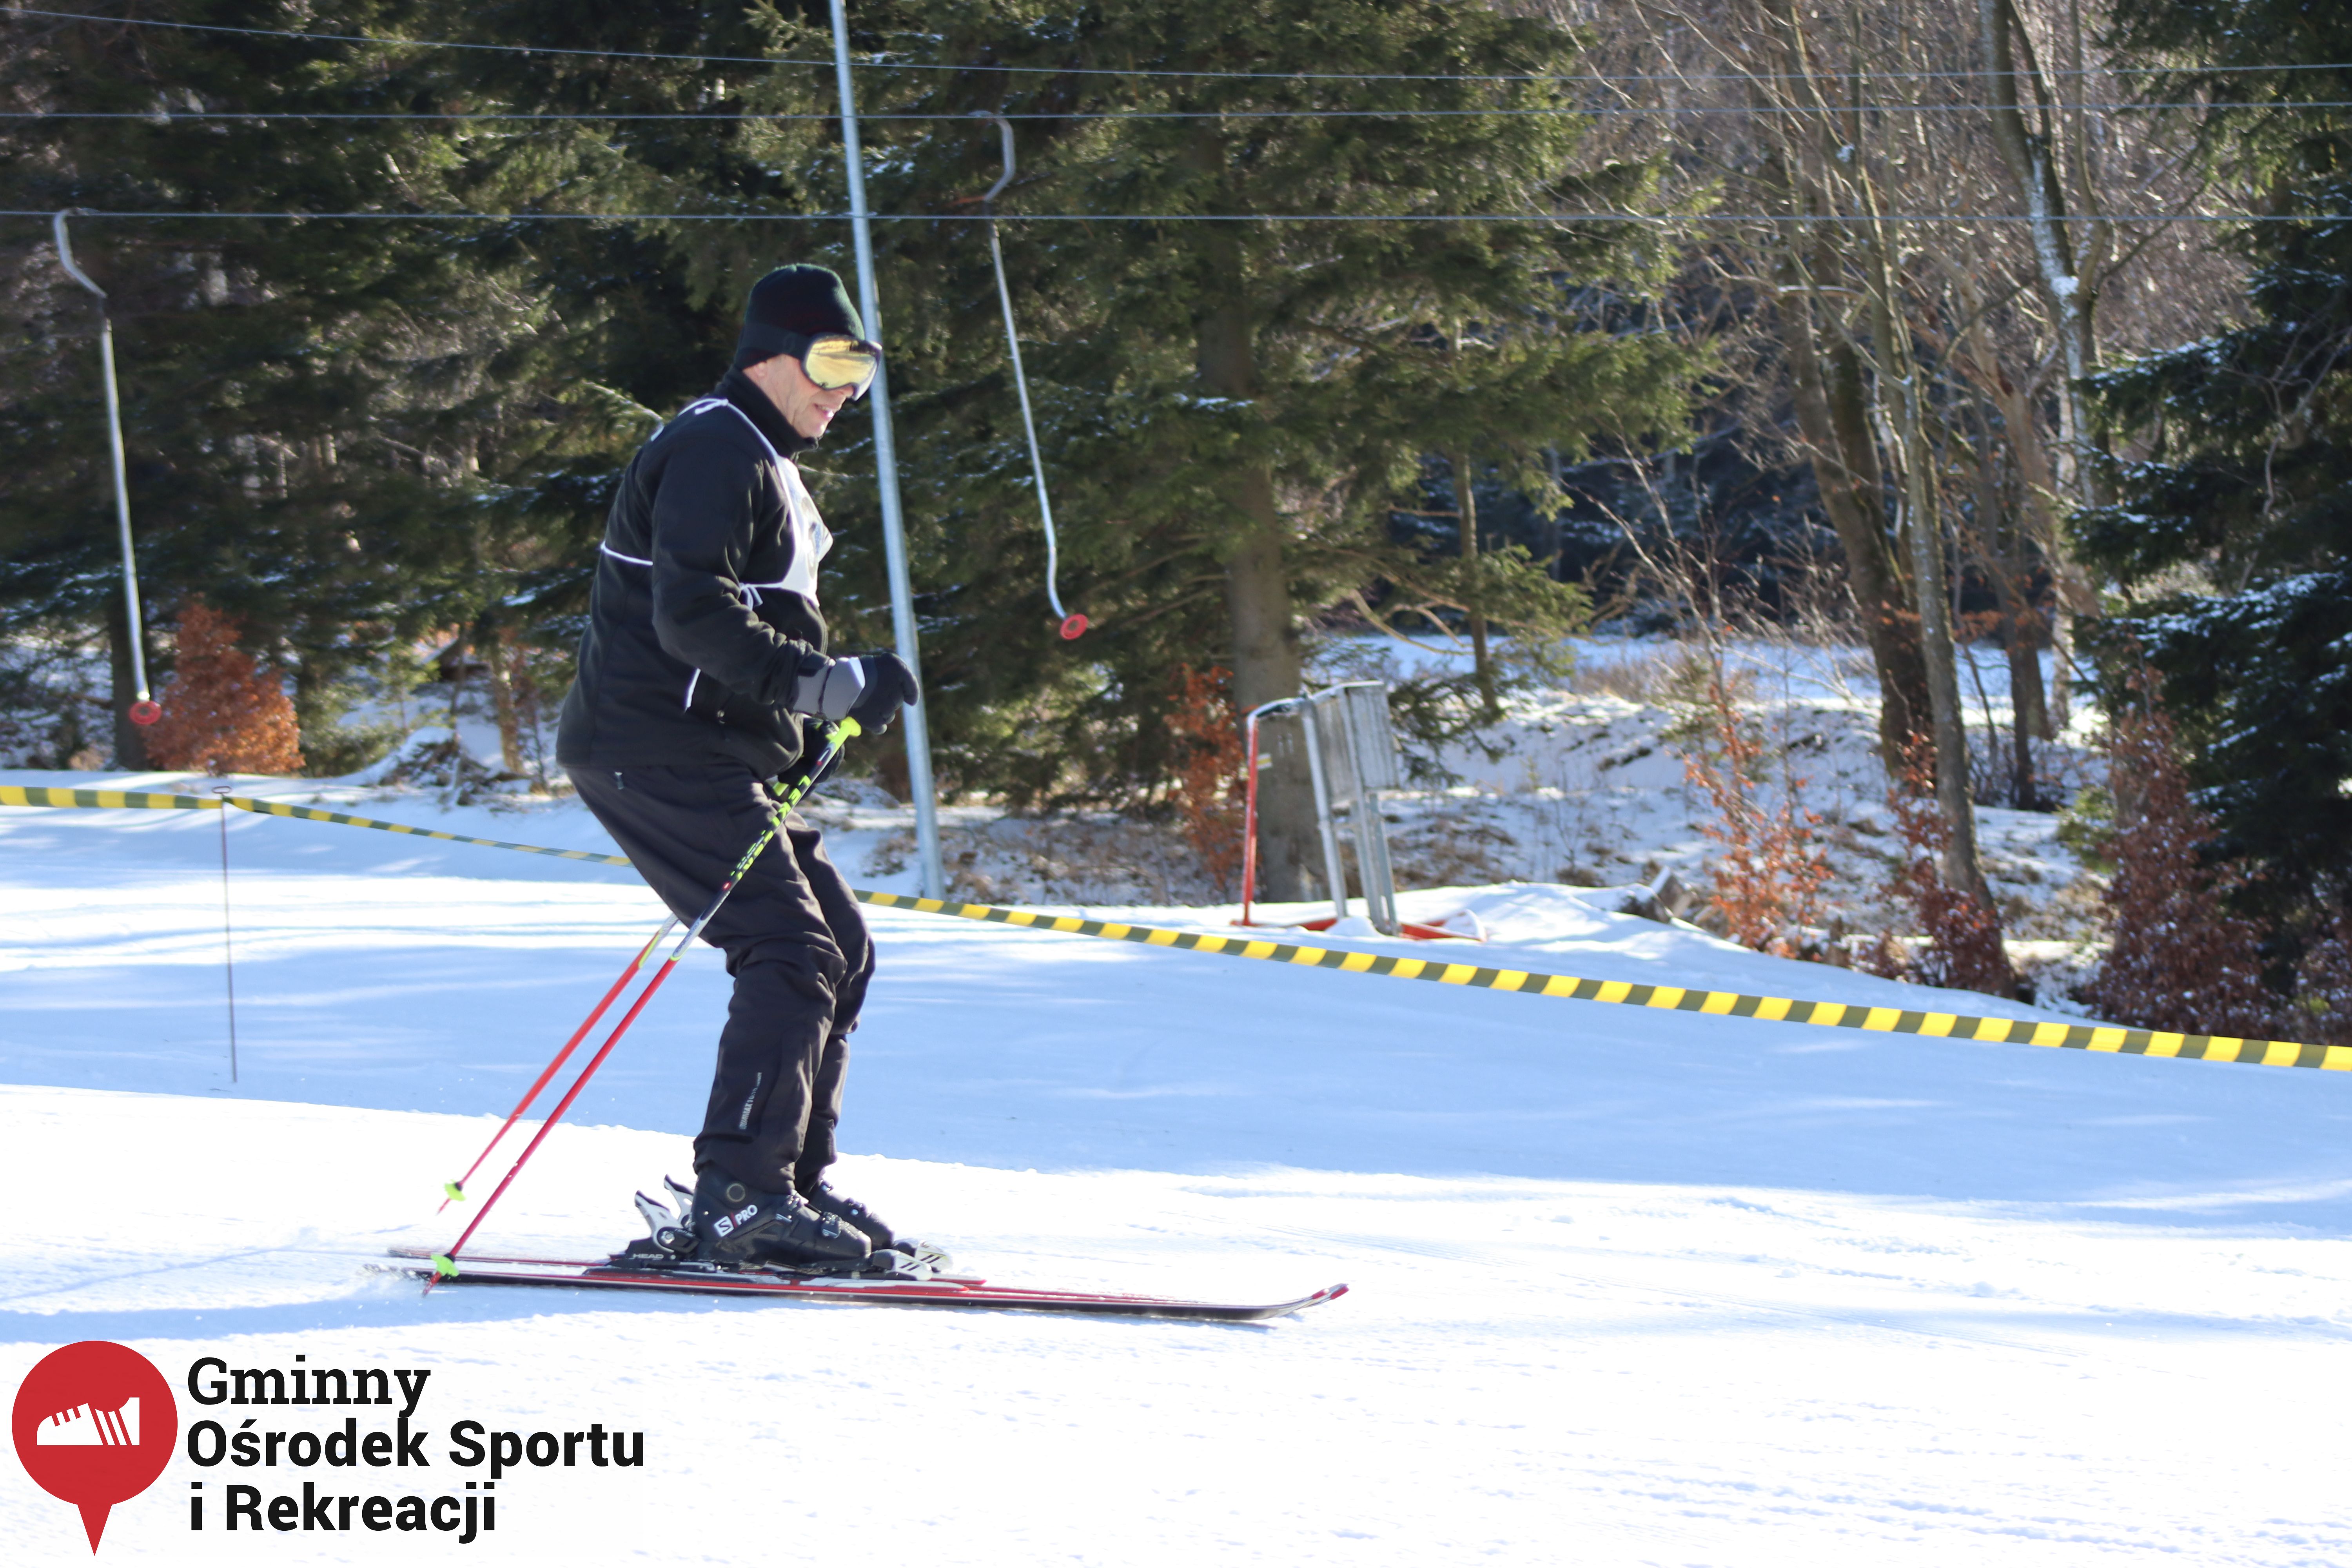 2022.02.12 - 18. Mistrzostwa Gminy Woszakowice w narciarstwie059.jpg - 1,82 MB